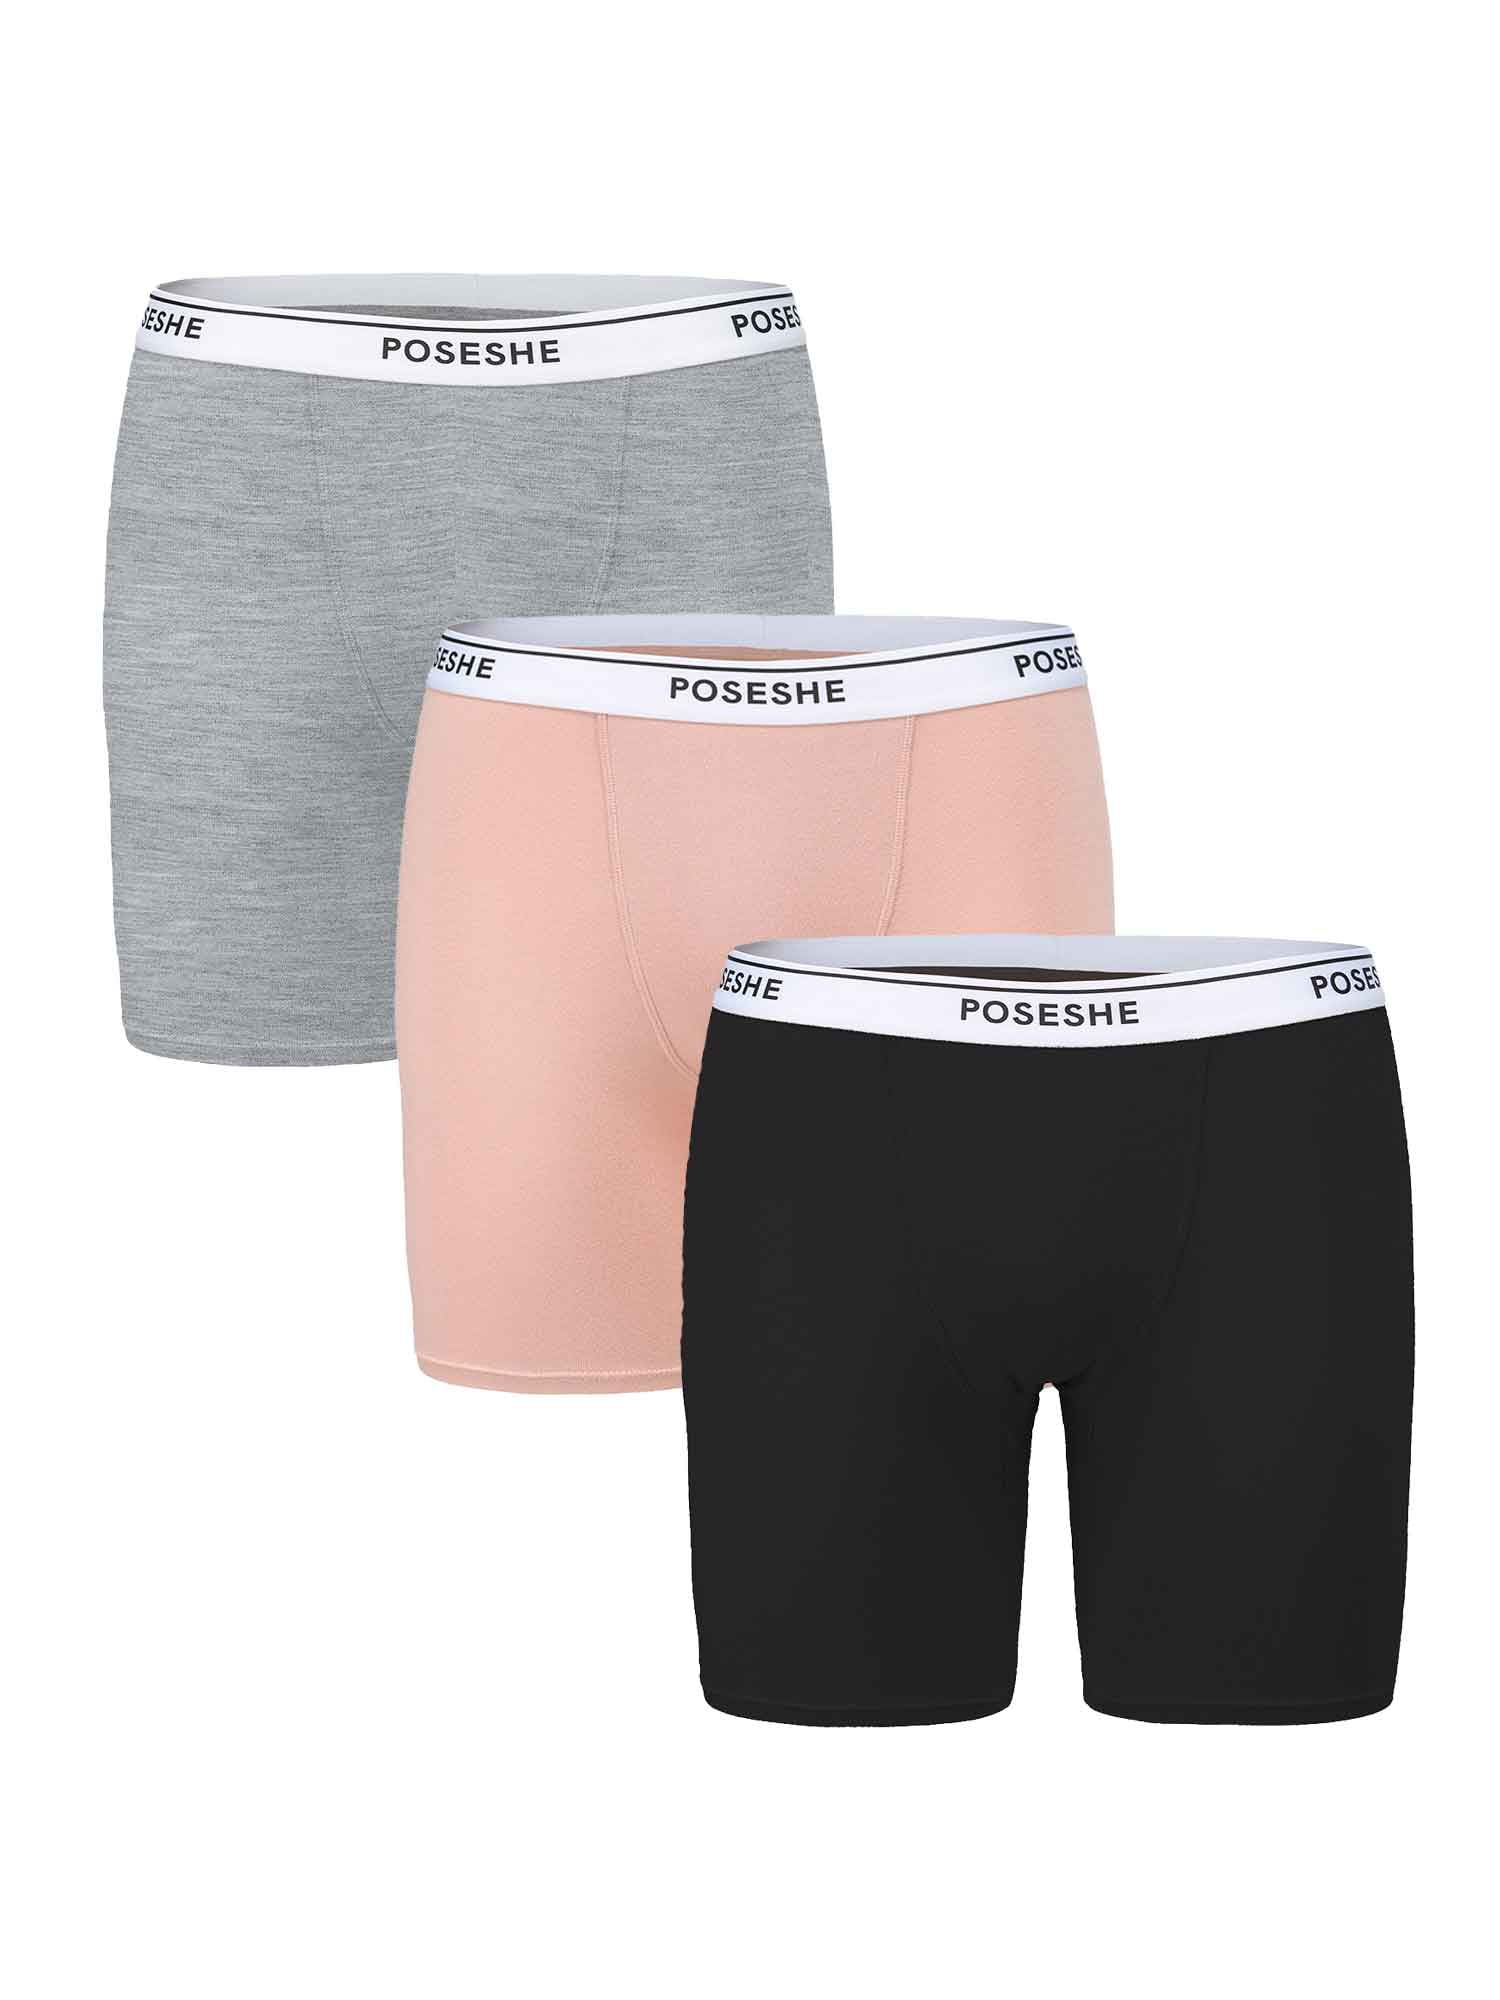 6 Boyshorts Sports SEXY SHORT Panties Undies Shortie Underwear PLUS SIZE  XL-3XL